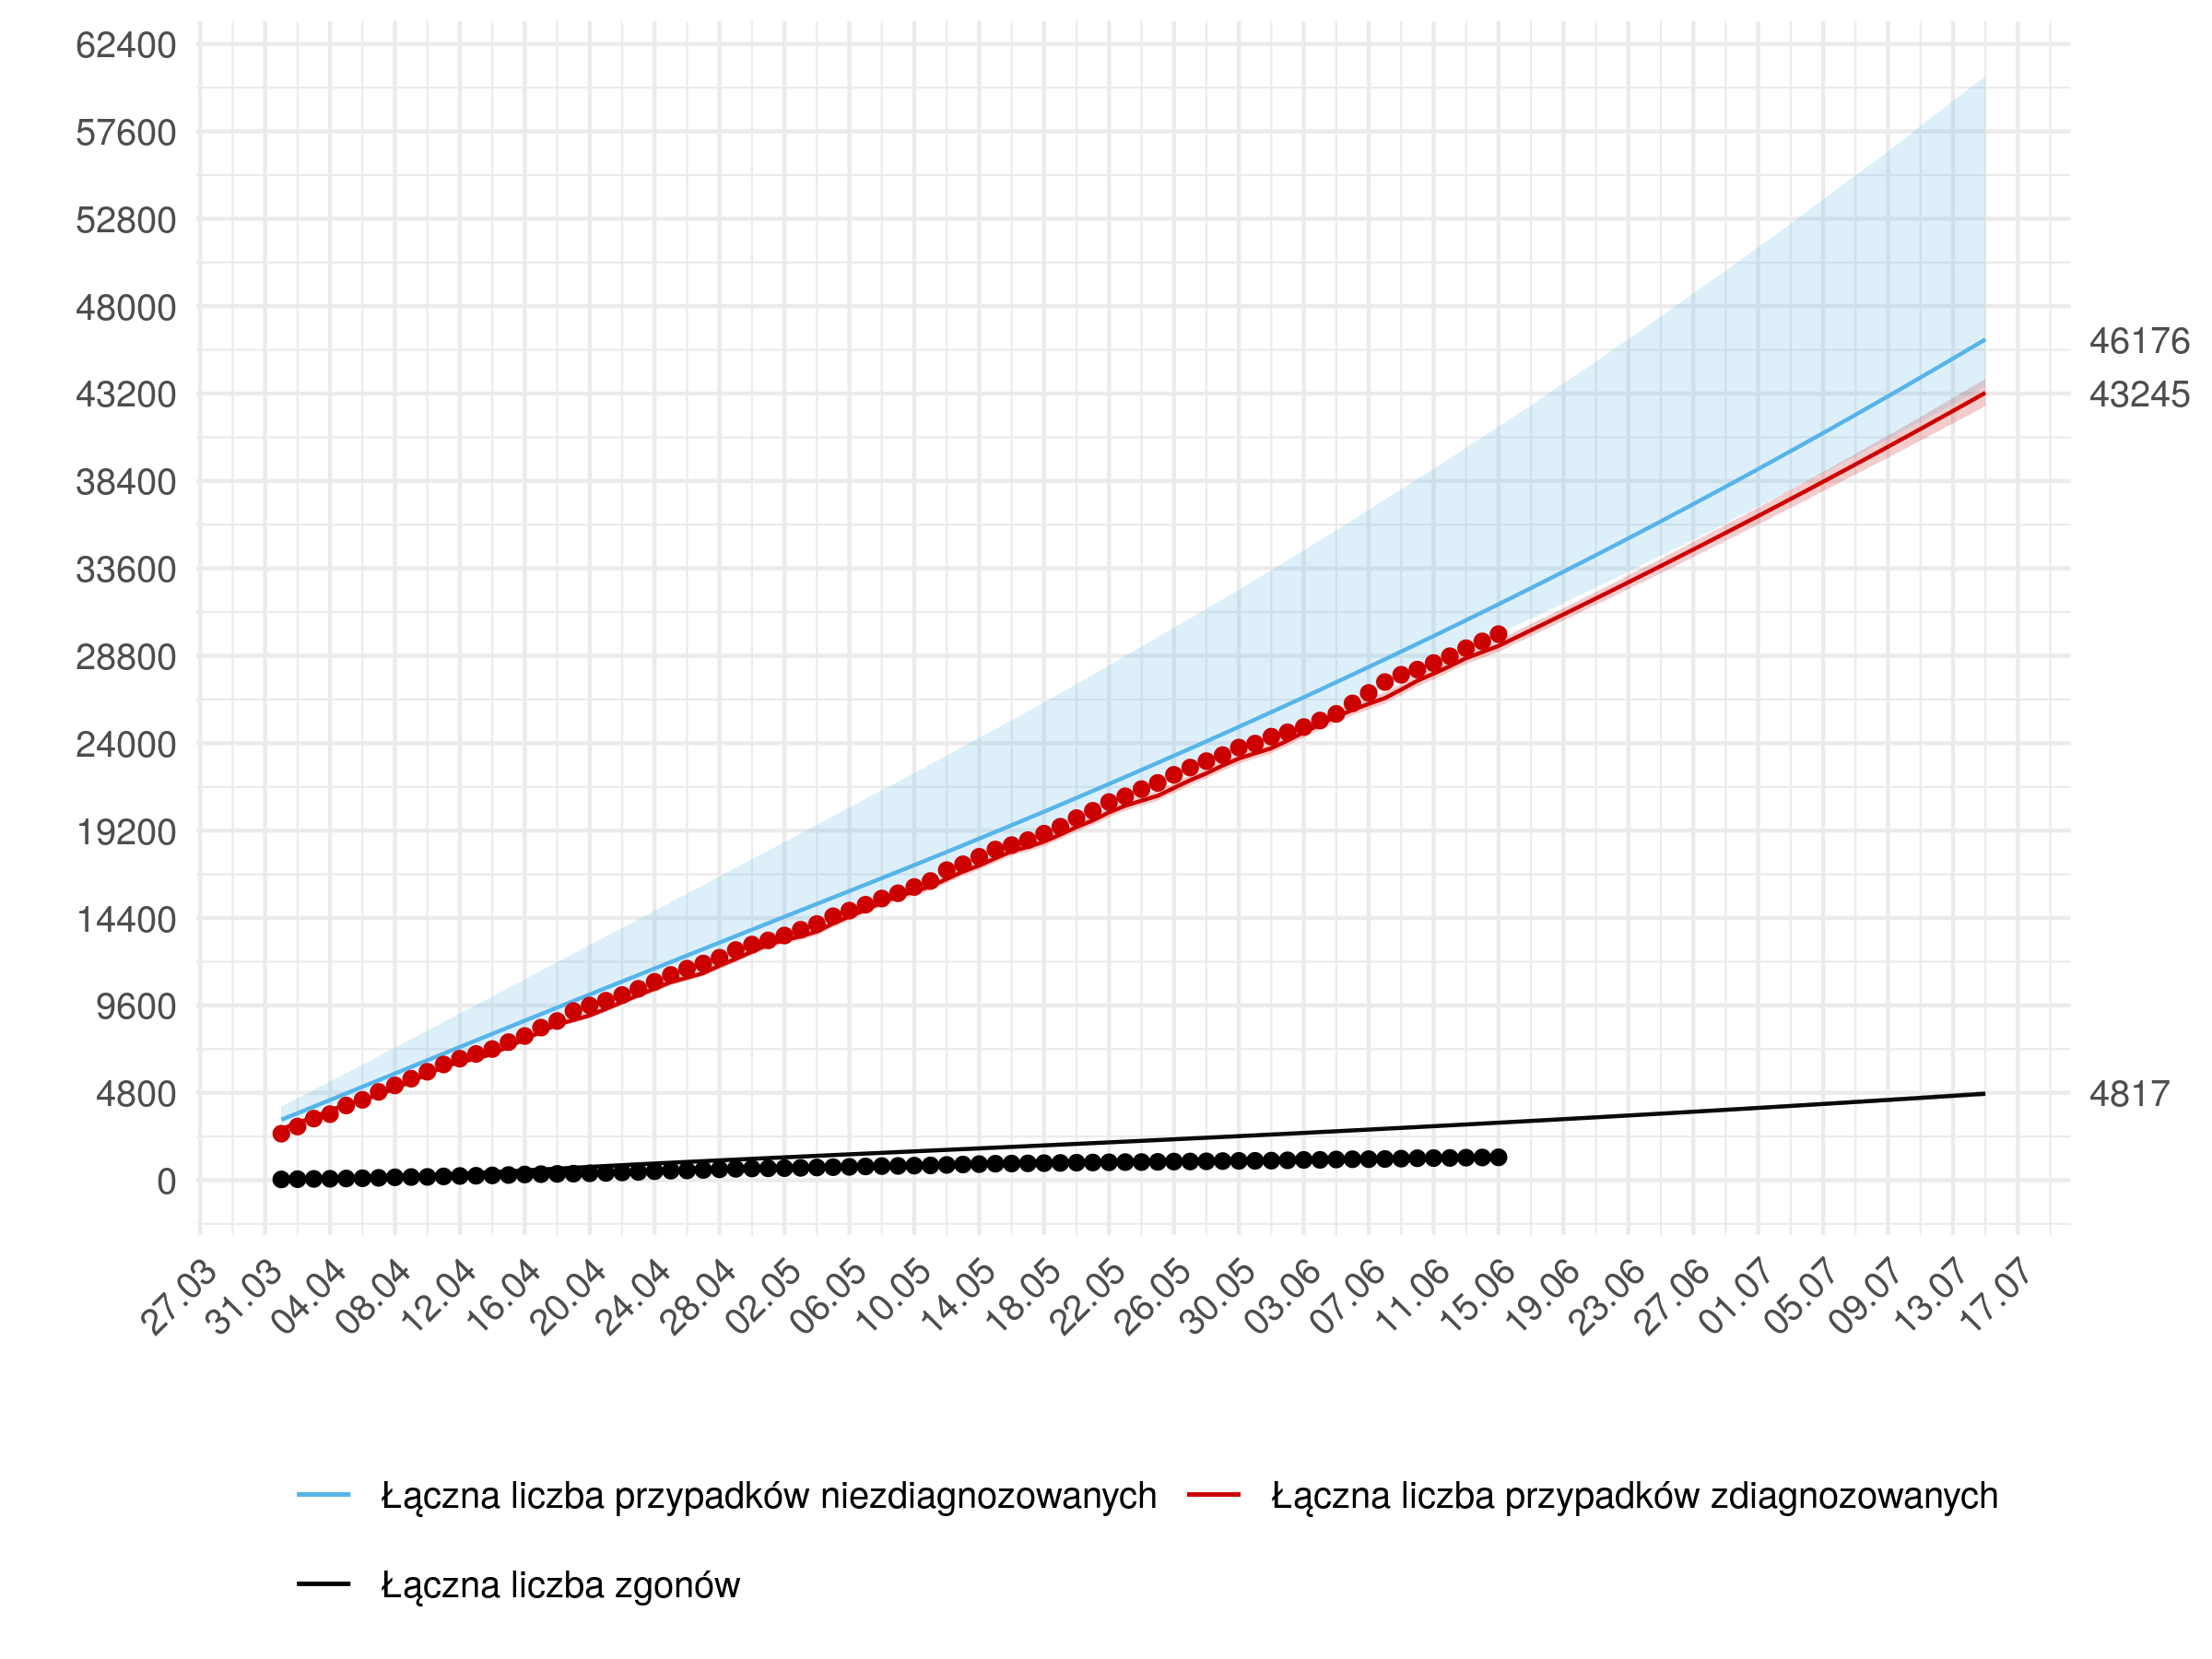 Średnioterminowa prognoza łącznej liczby rozpoznań zdiagnozowanych (czerwona linia) i niezdiagnozowanych (niebieska) w modelu stochastycznym. W dniach 16 czerwca - 15 lipca przyjęto wzrost liczby testów opisany. Na dzień 11 lipca przewidujemy 43 245 z 95% przedziałem ufności (42 512 - 44 011).